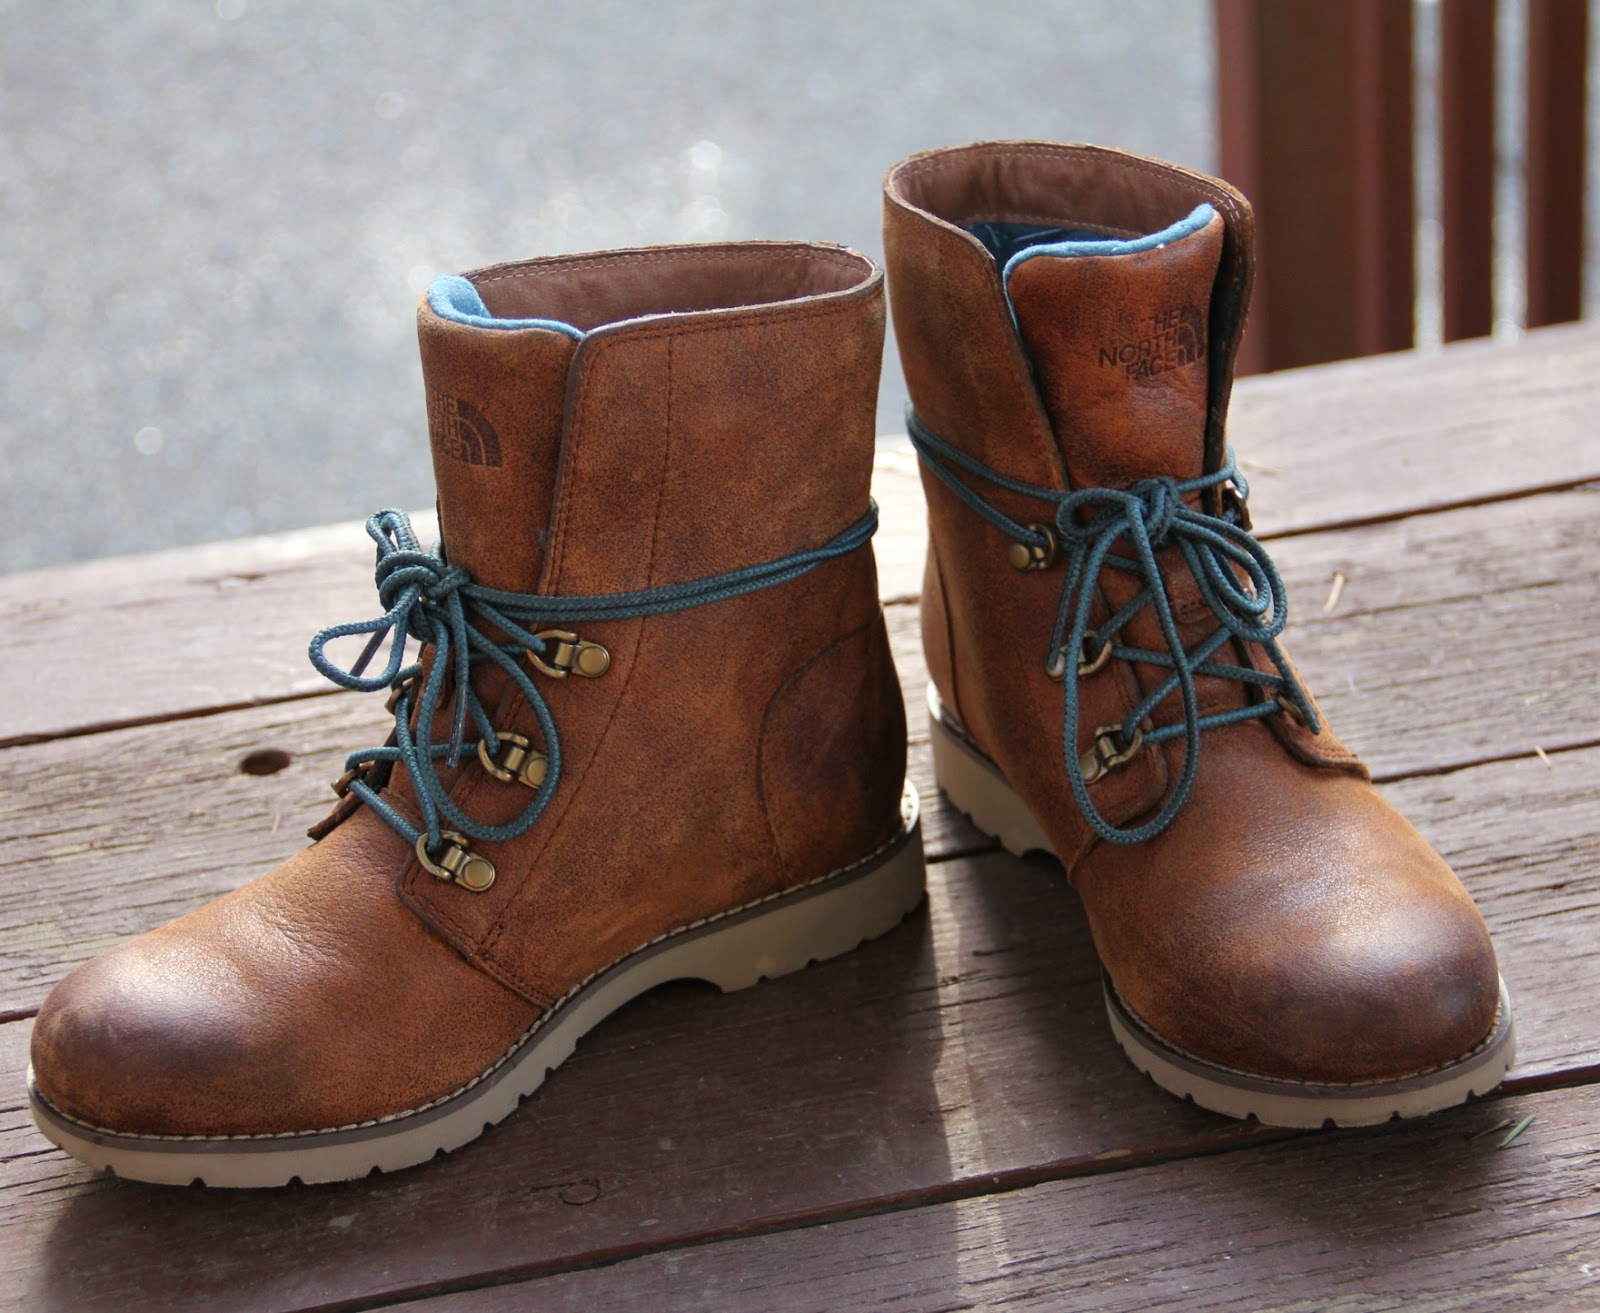 ballard lace boots